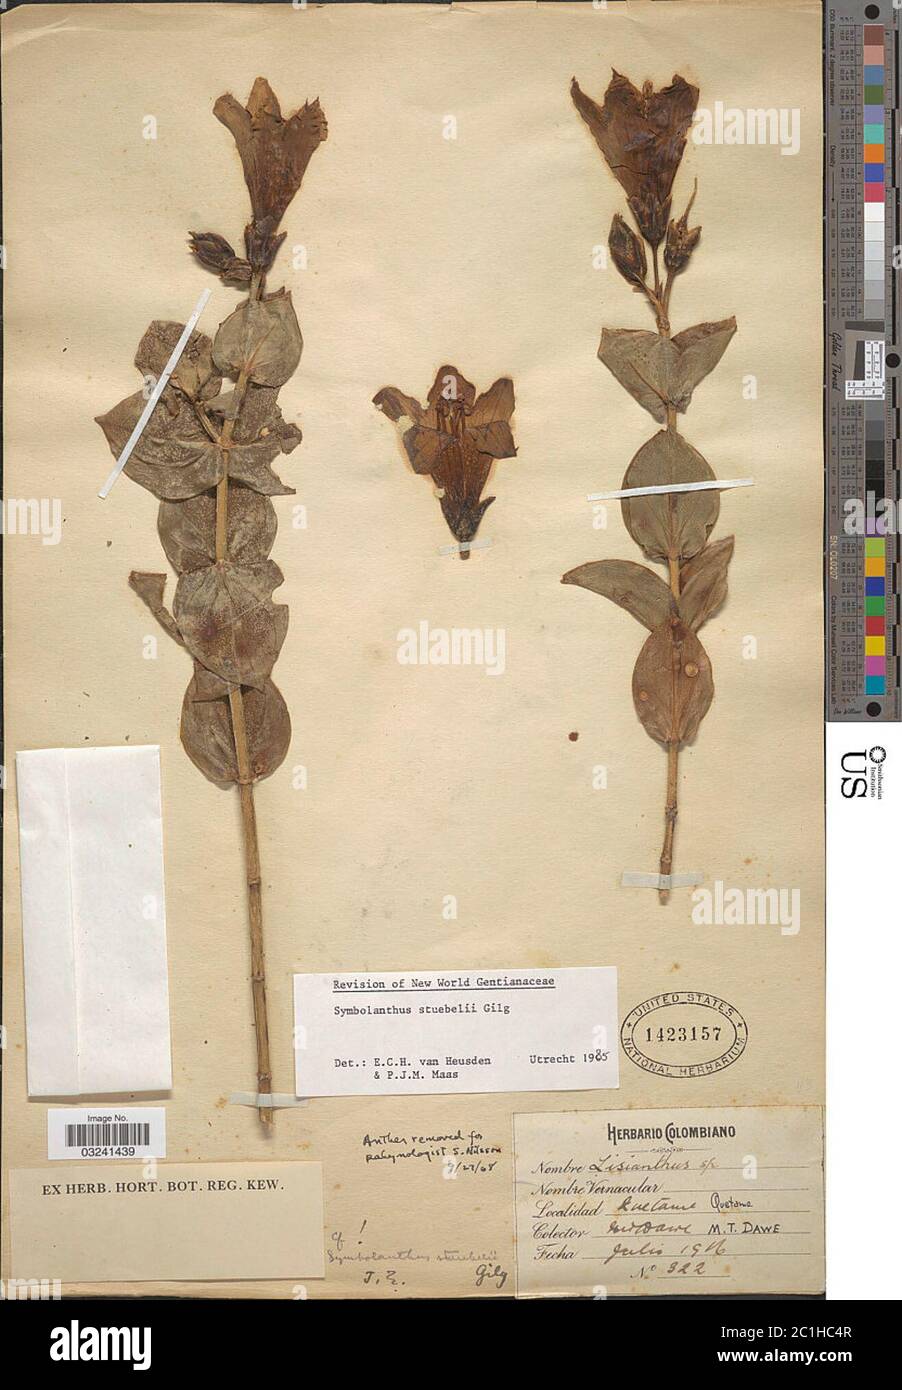 Symbolanthus stuebelii Gilg Symbolanthus stuebelii Gilg. Stock Photo